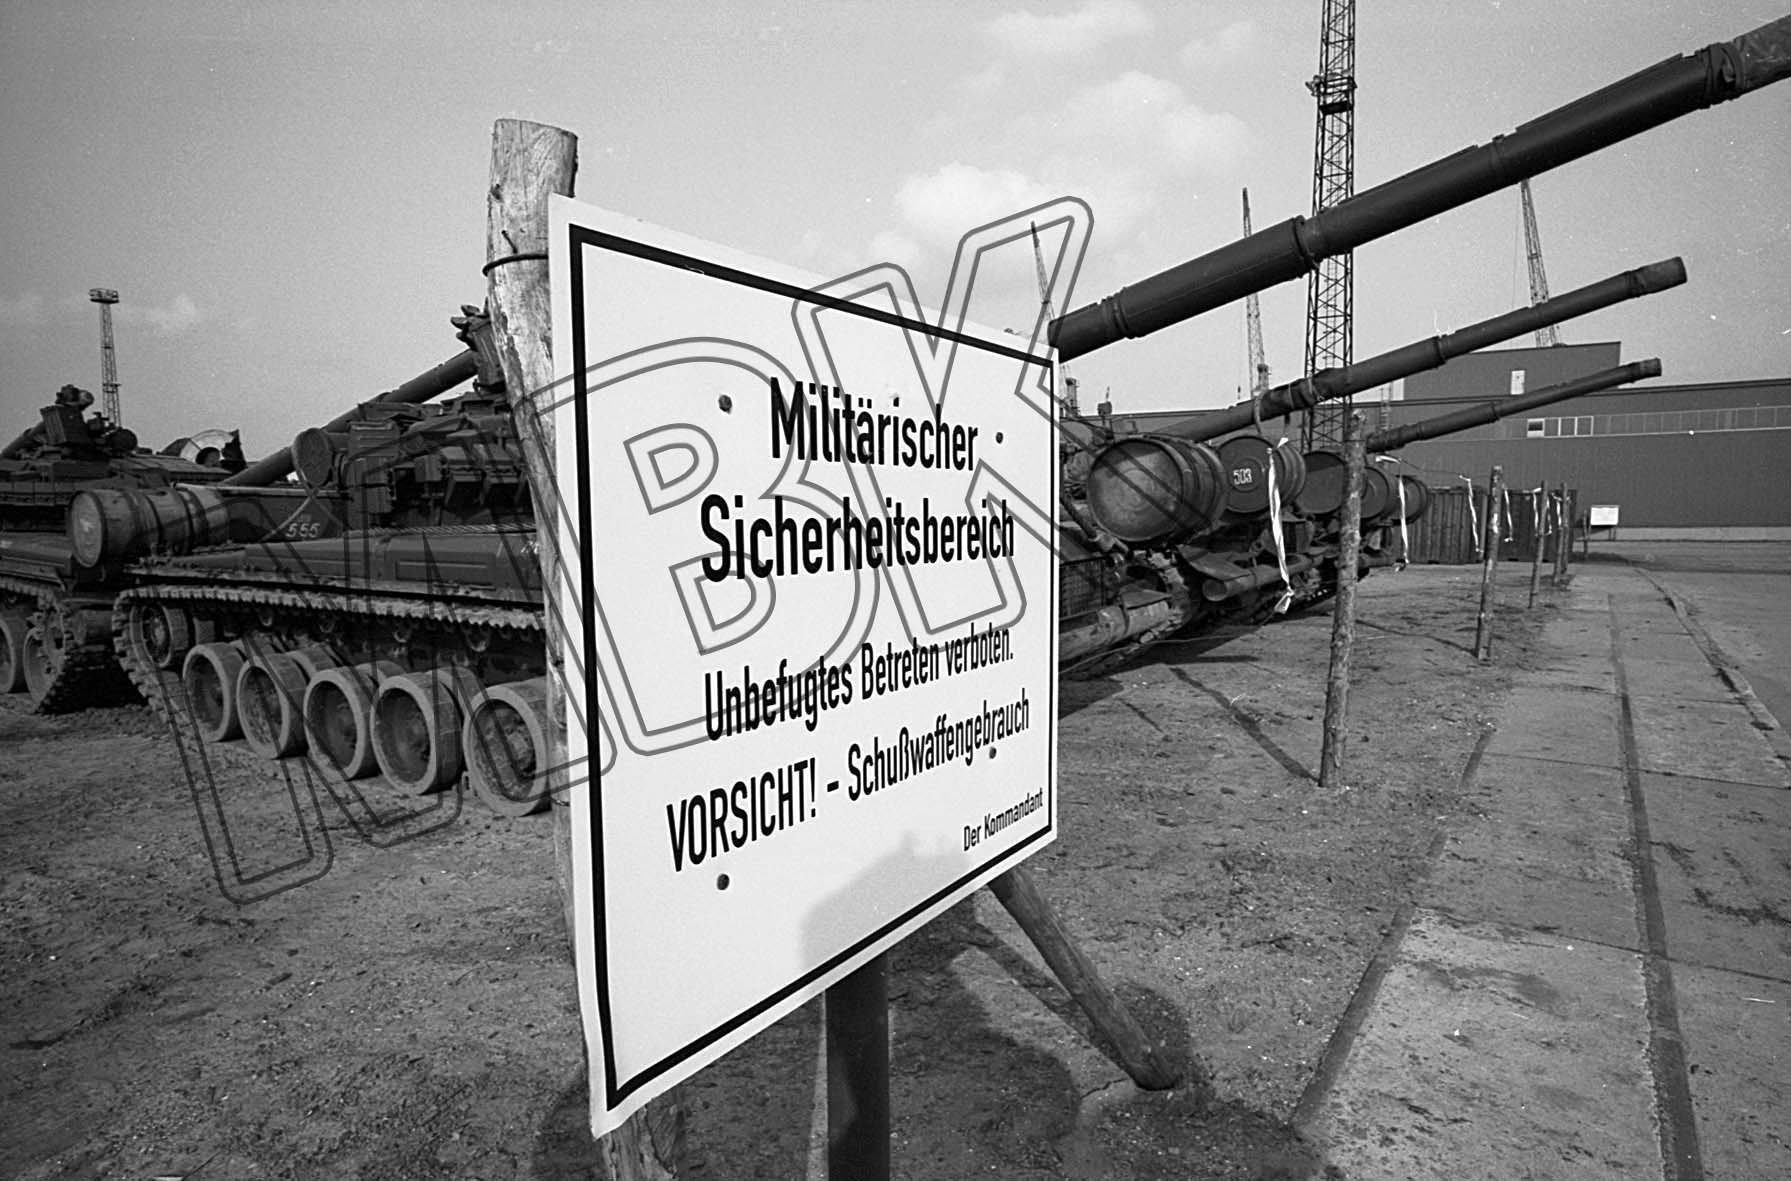 Abtransport von Panzern, Rostock, 26. März 1992 (Museum Berlin-Karlshorst RR-P)